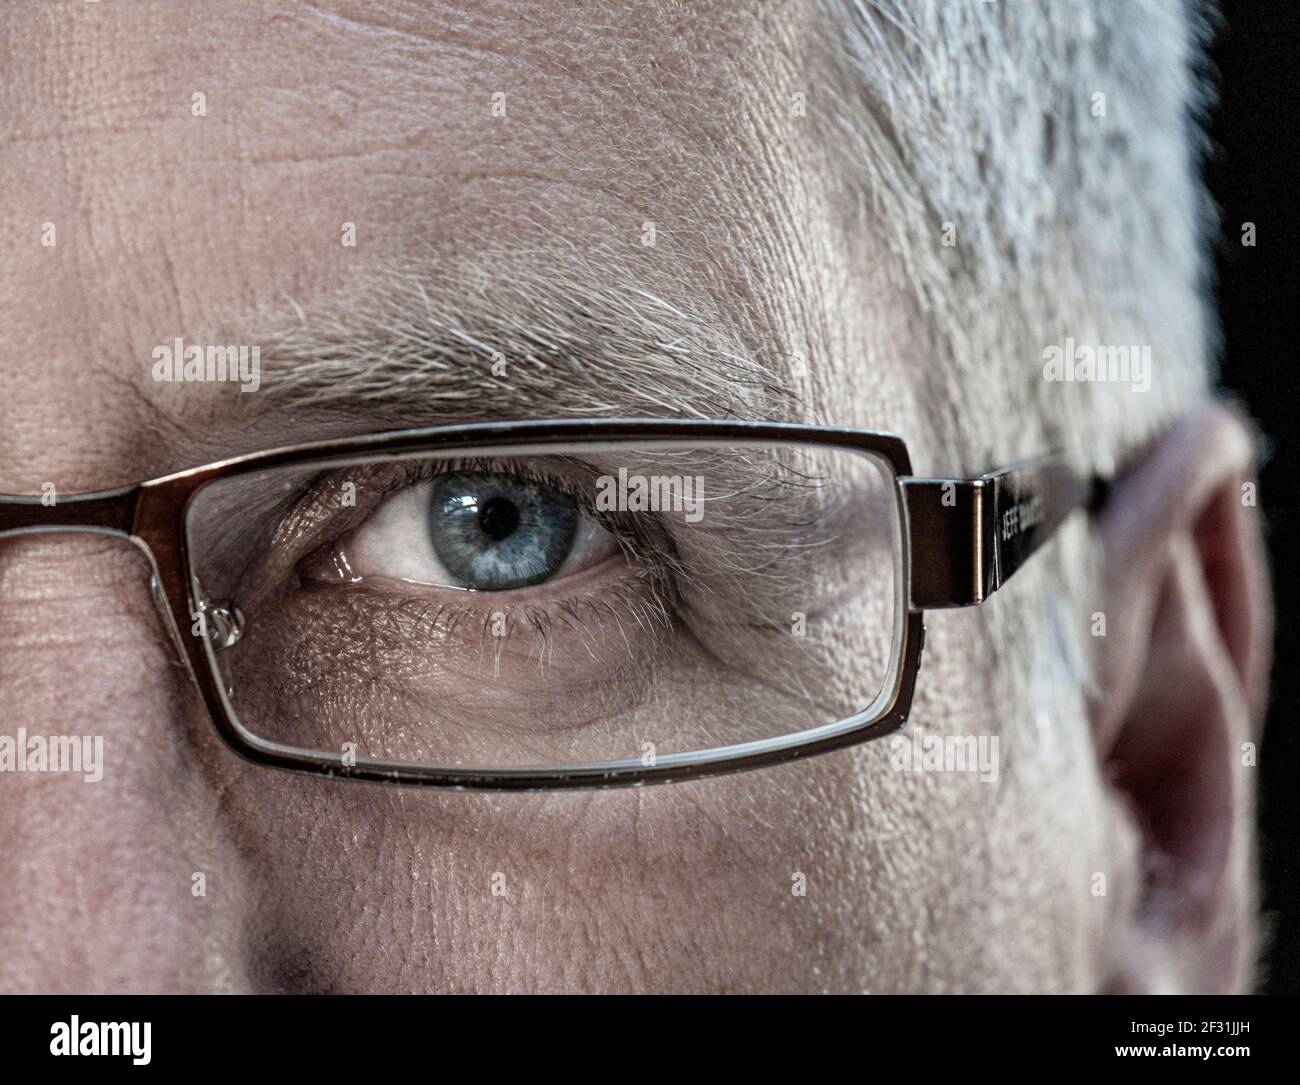 Occhiali mezze facce maschio occhio uomo maturo età 50-55 anni con occhiali di design, gli occhiali si avvicinano alla vista blu rivolto in avanti Foto Stock